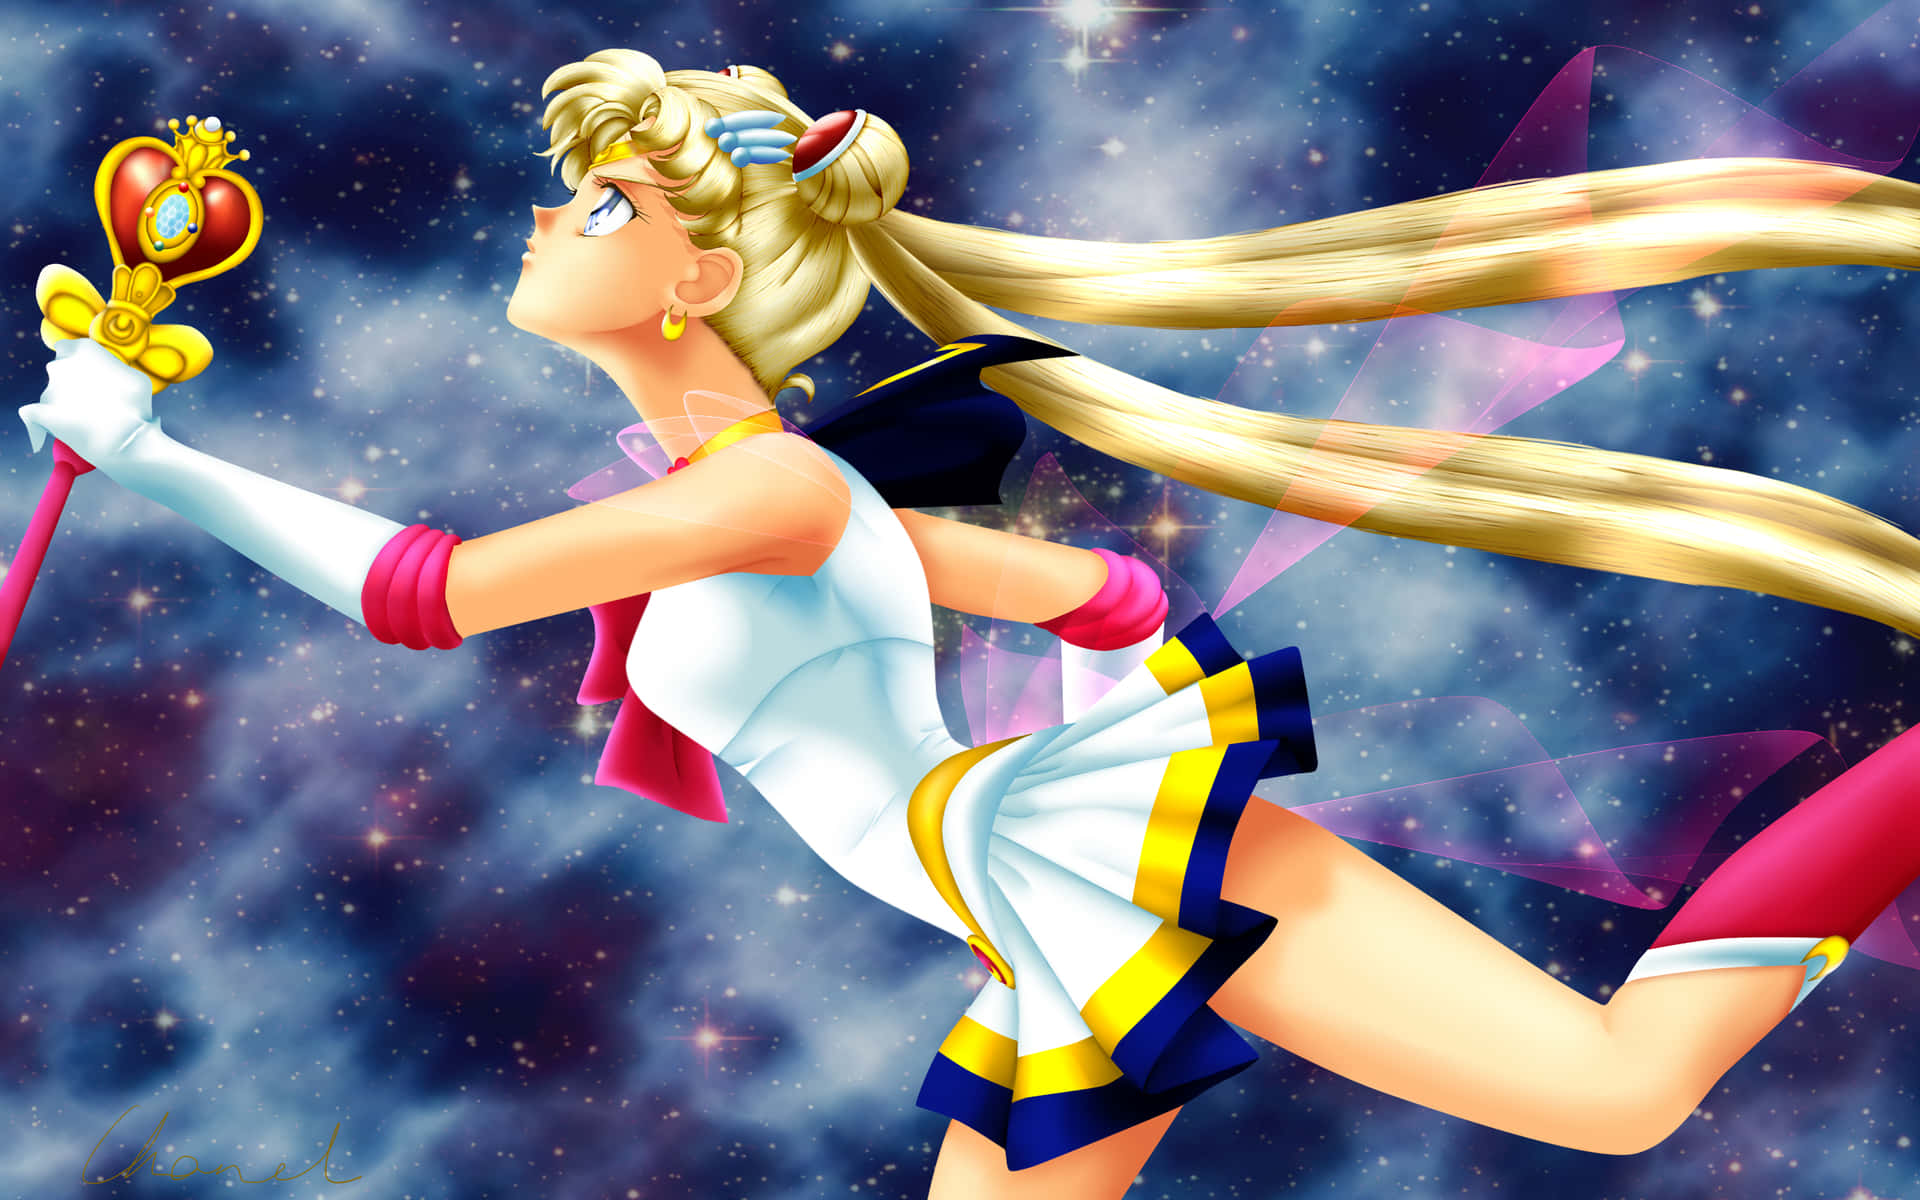 Sailormoon Und Ihre Tapferen Verbündeten Nutzen Die Kraft Des Mondes, Um Die Welt Zu Beschützen.